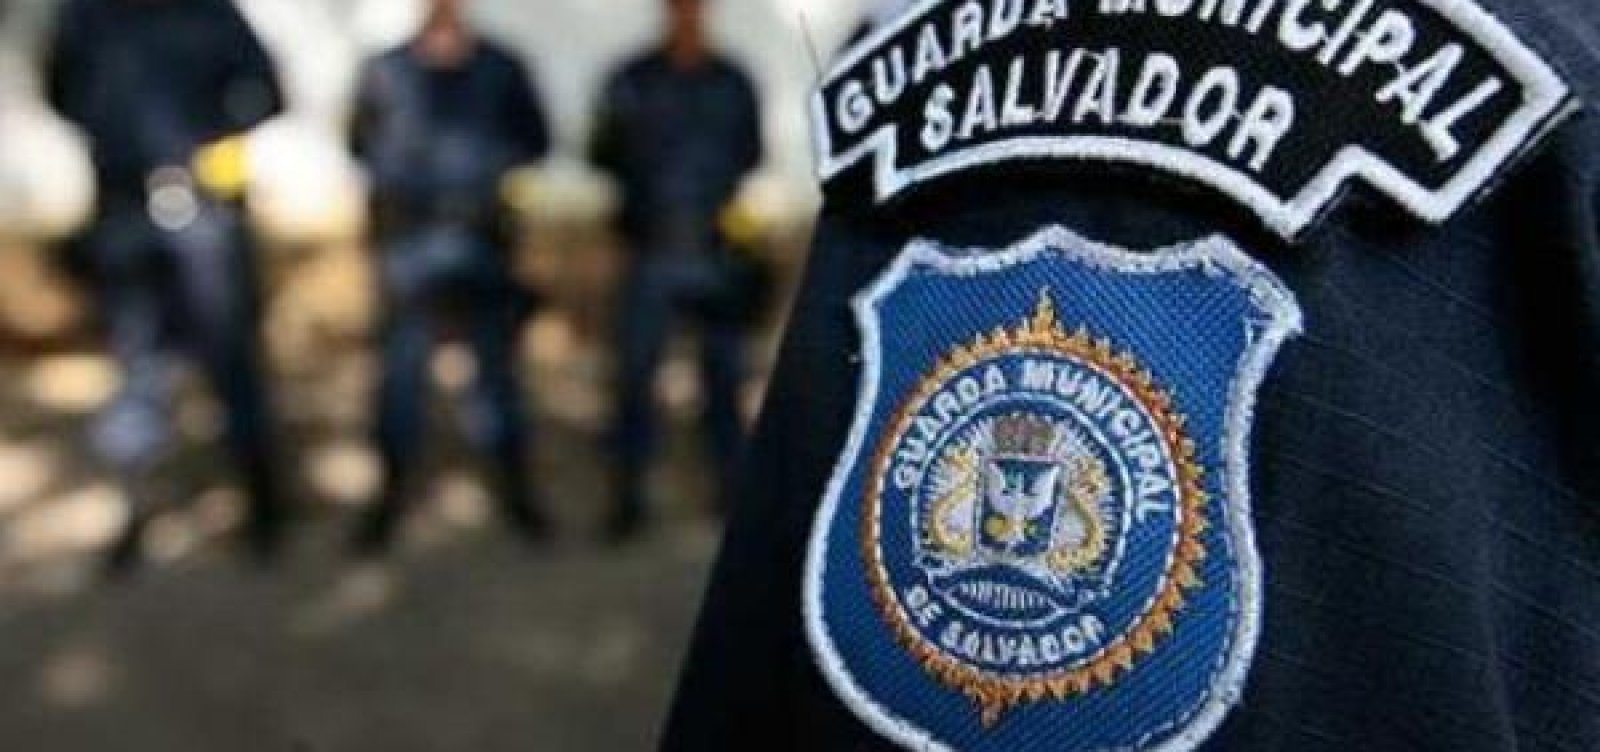 Diretor da Guarda lamenta morte de agente e fala sobre escalada da violência: “Sinal para todos que trabalham com segurança”